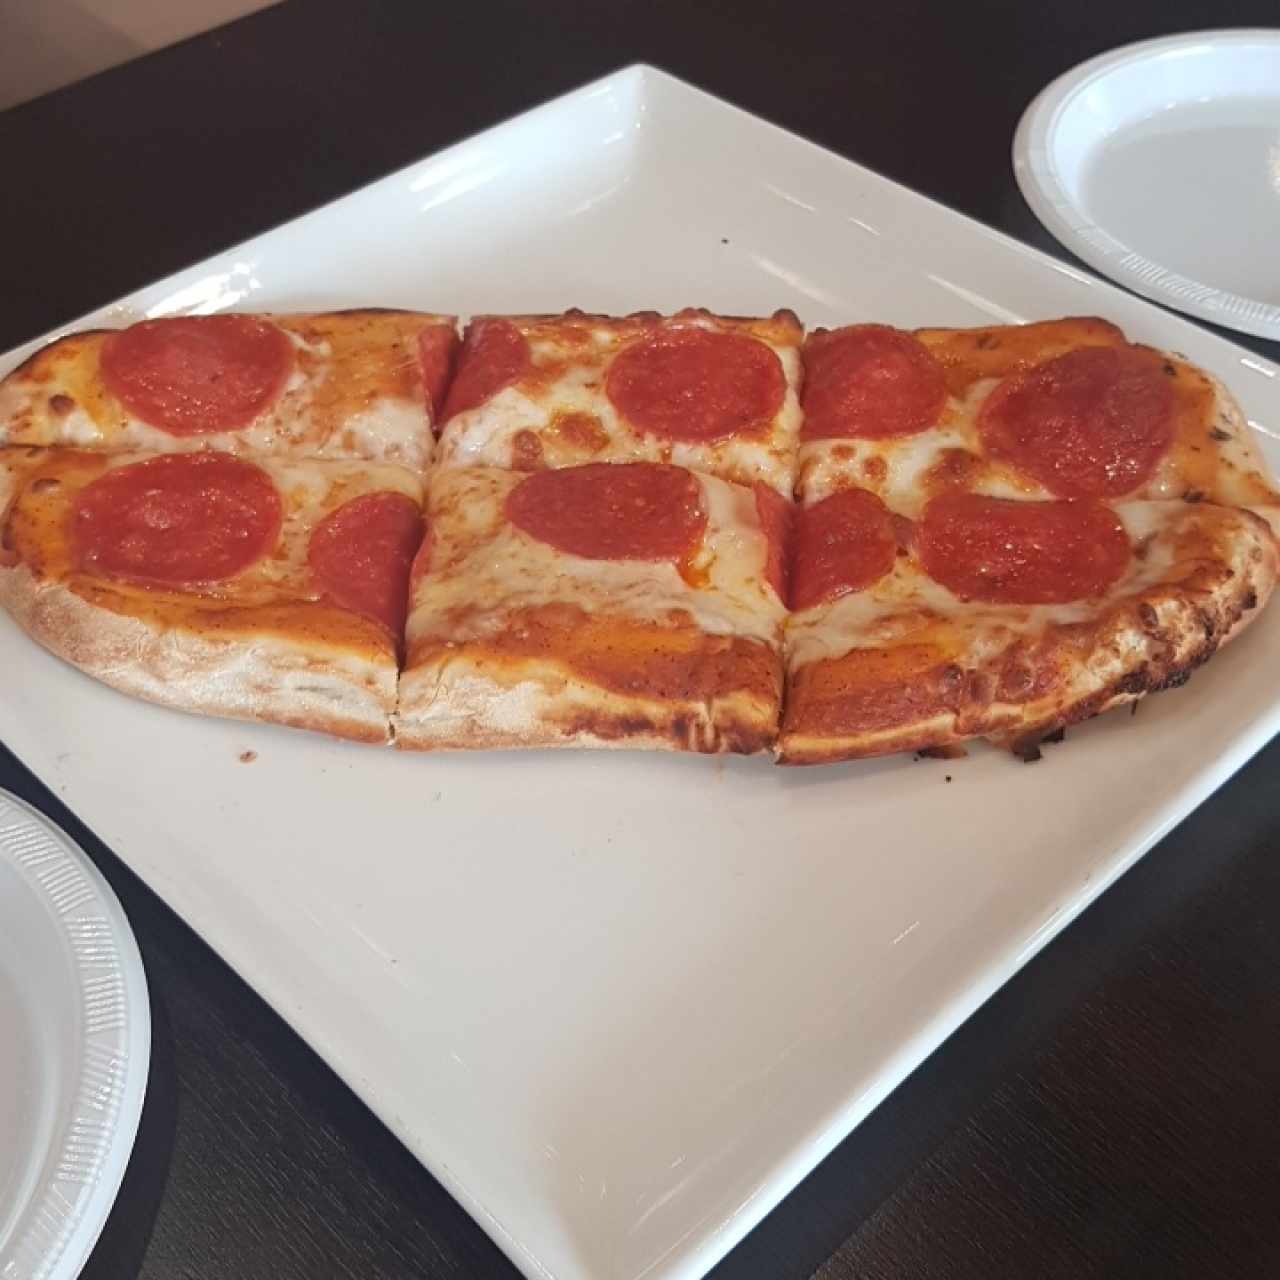 PIZZA TRADIZIONALE - Pepperoni